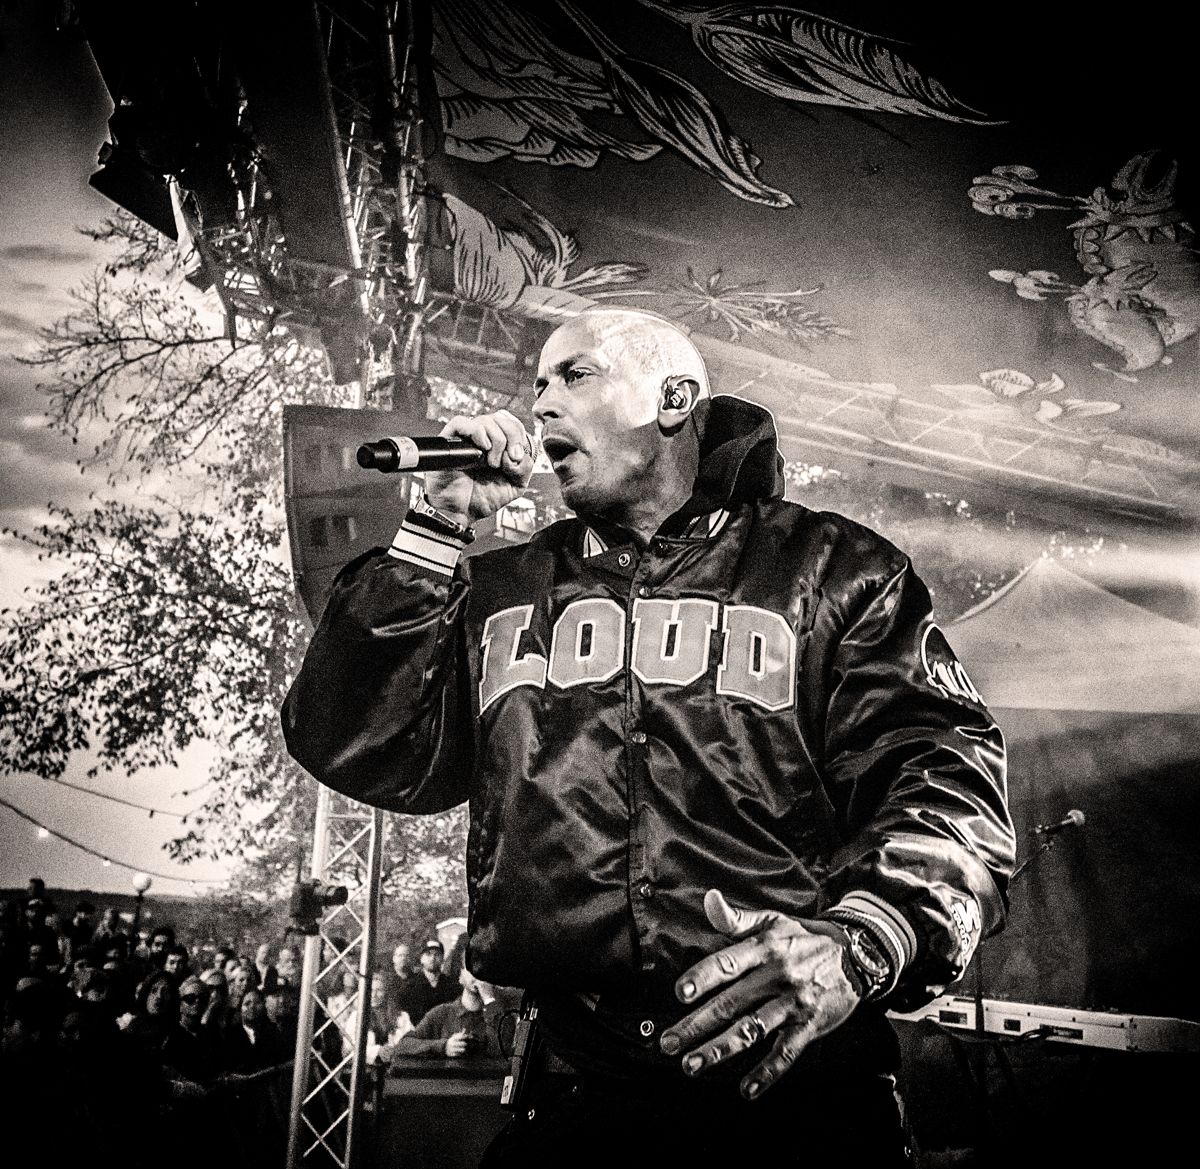 Svenska rapartisten Petter uppträder på Hanko Sommarfest på lördag.